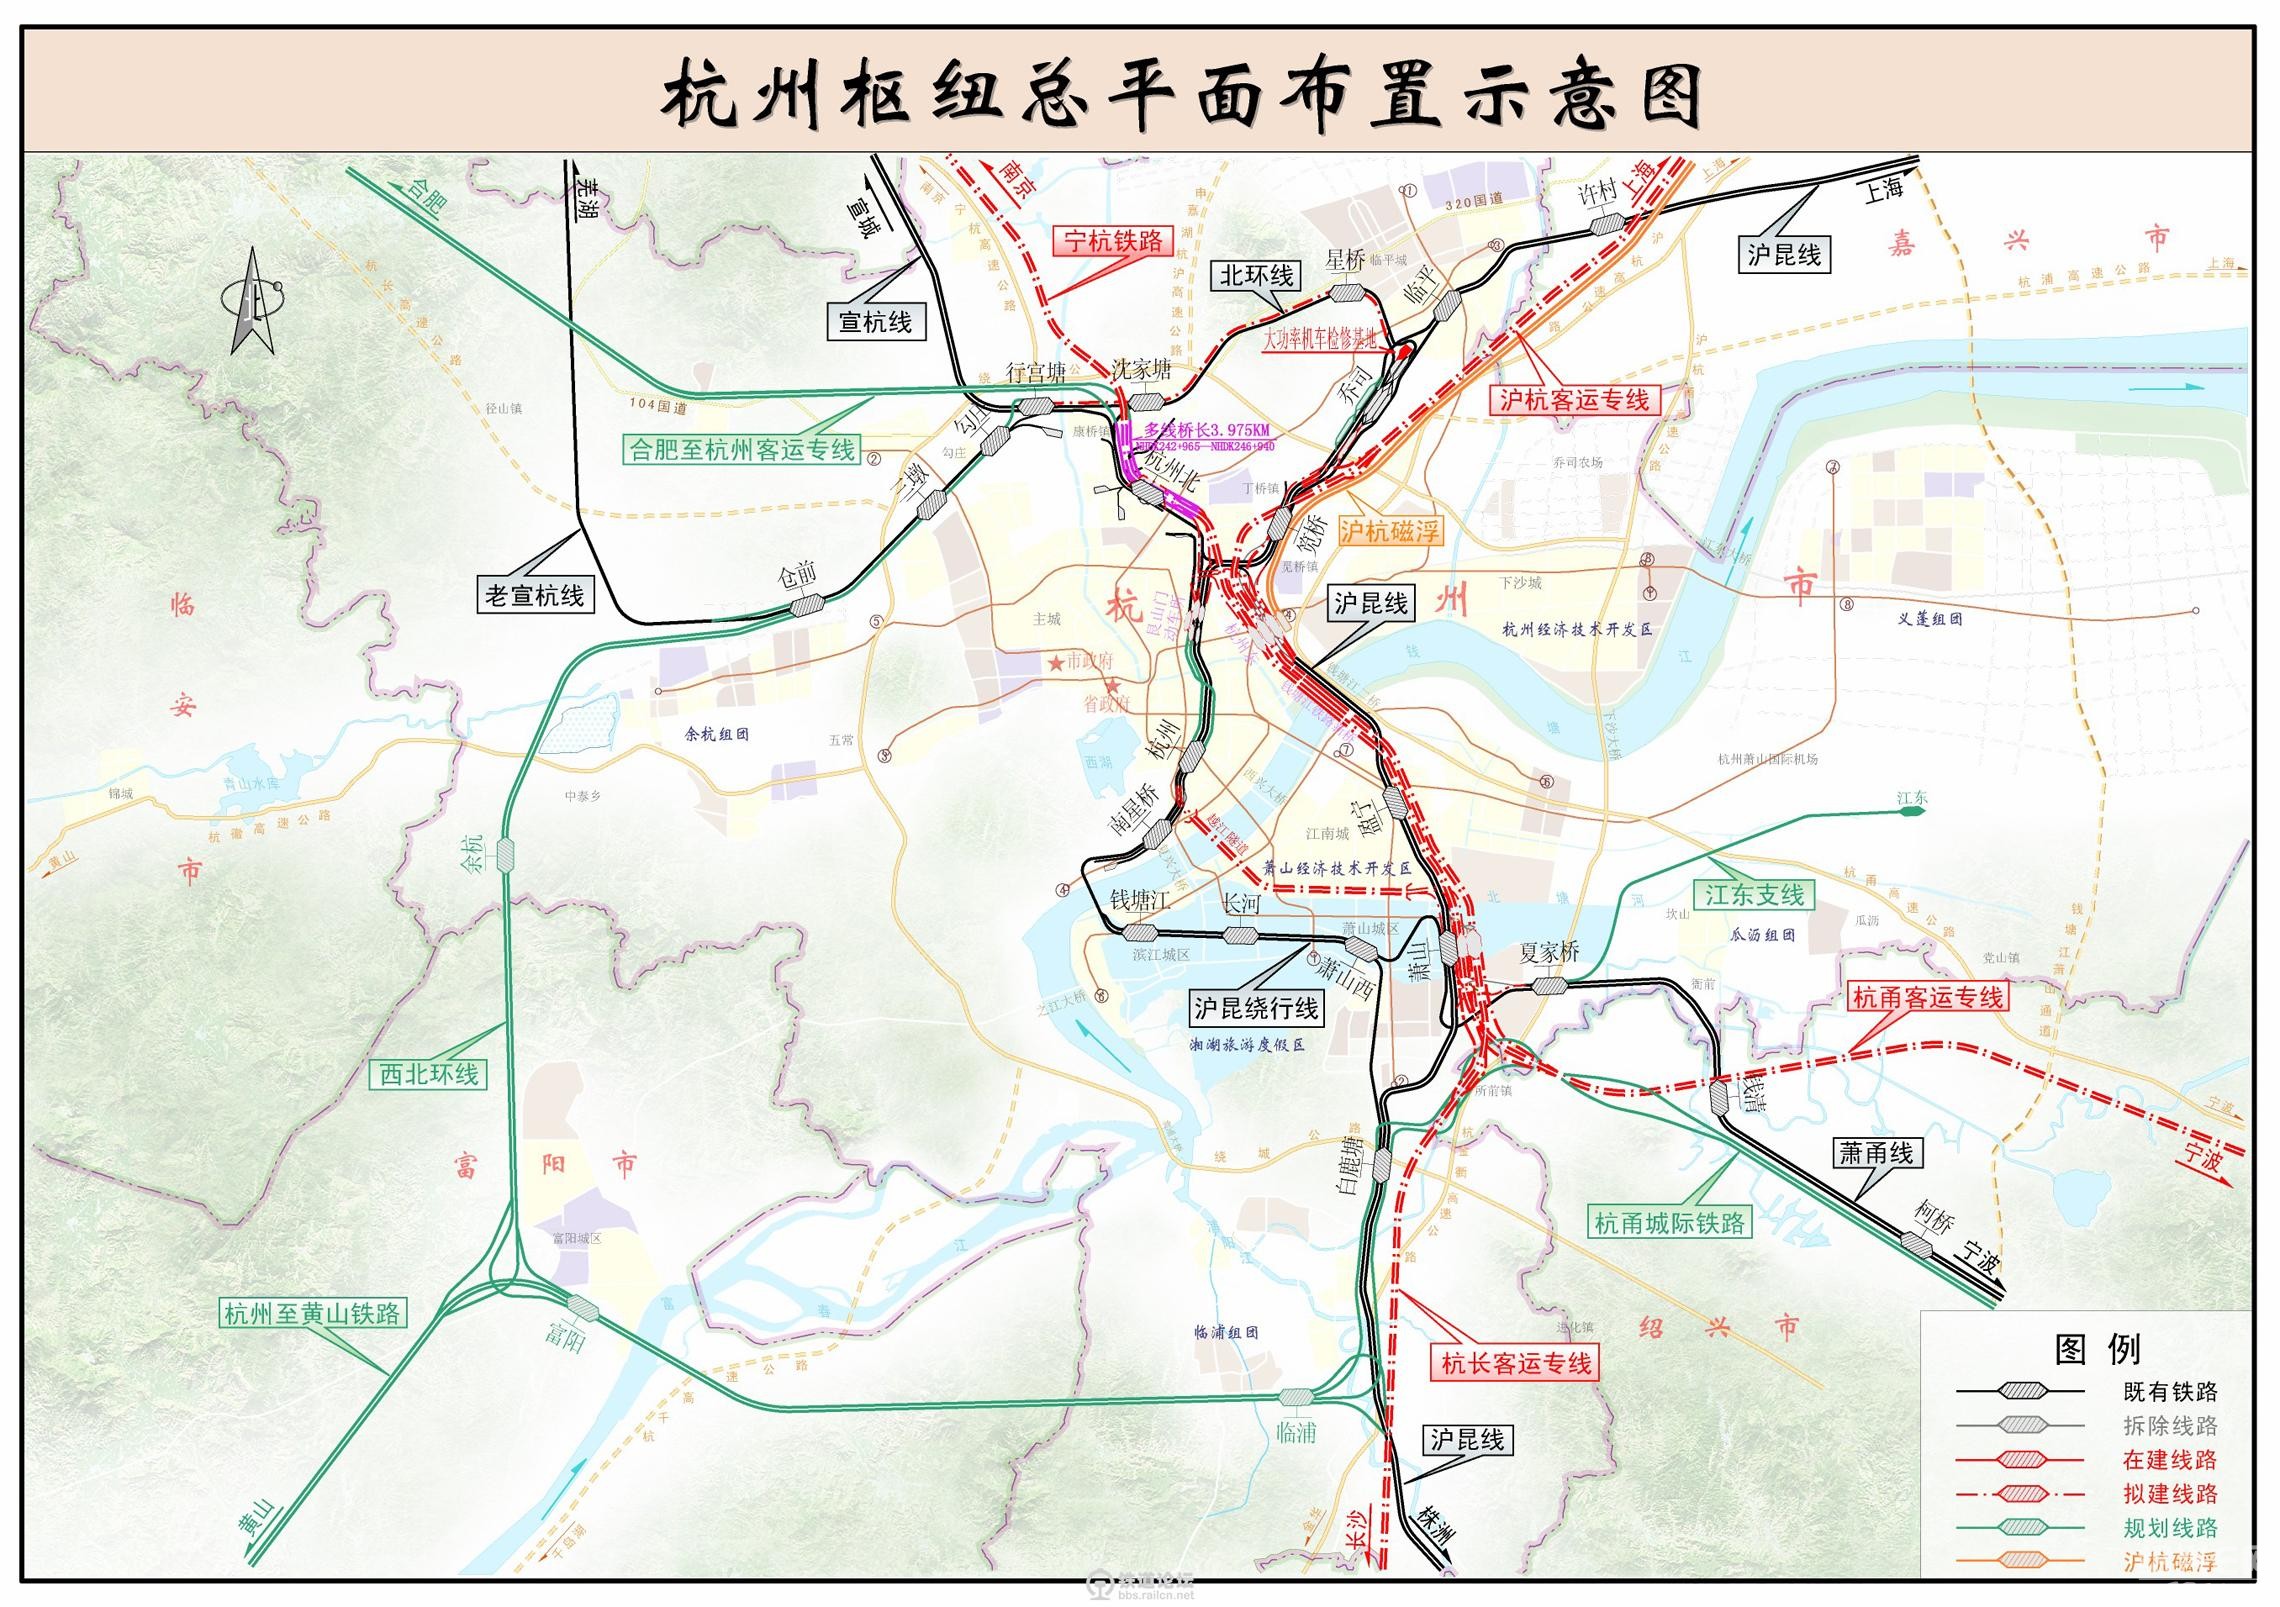 杭州铁路枢纽总图规划力争6月底批复(事关杭绍台)|第